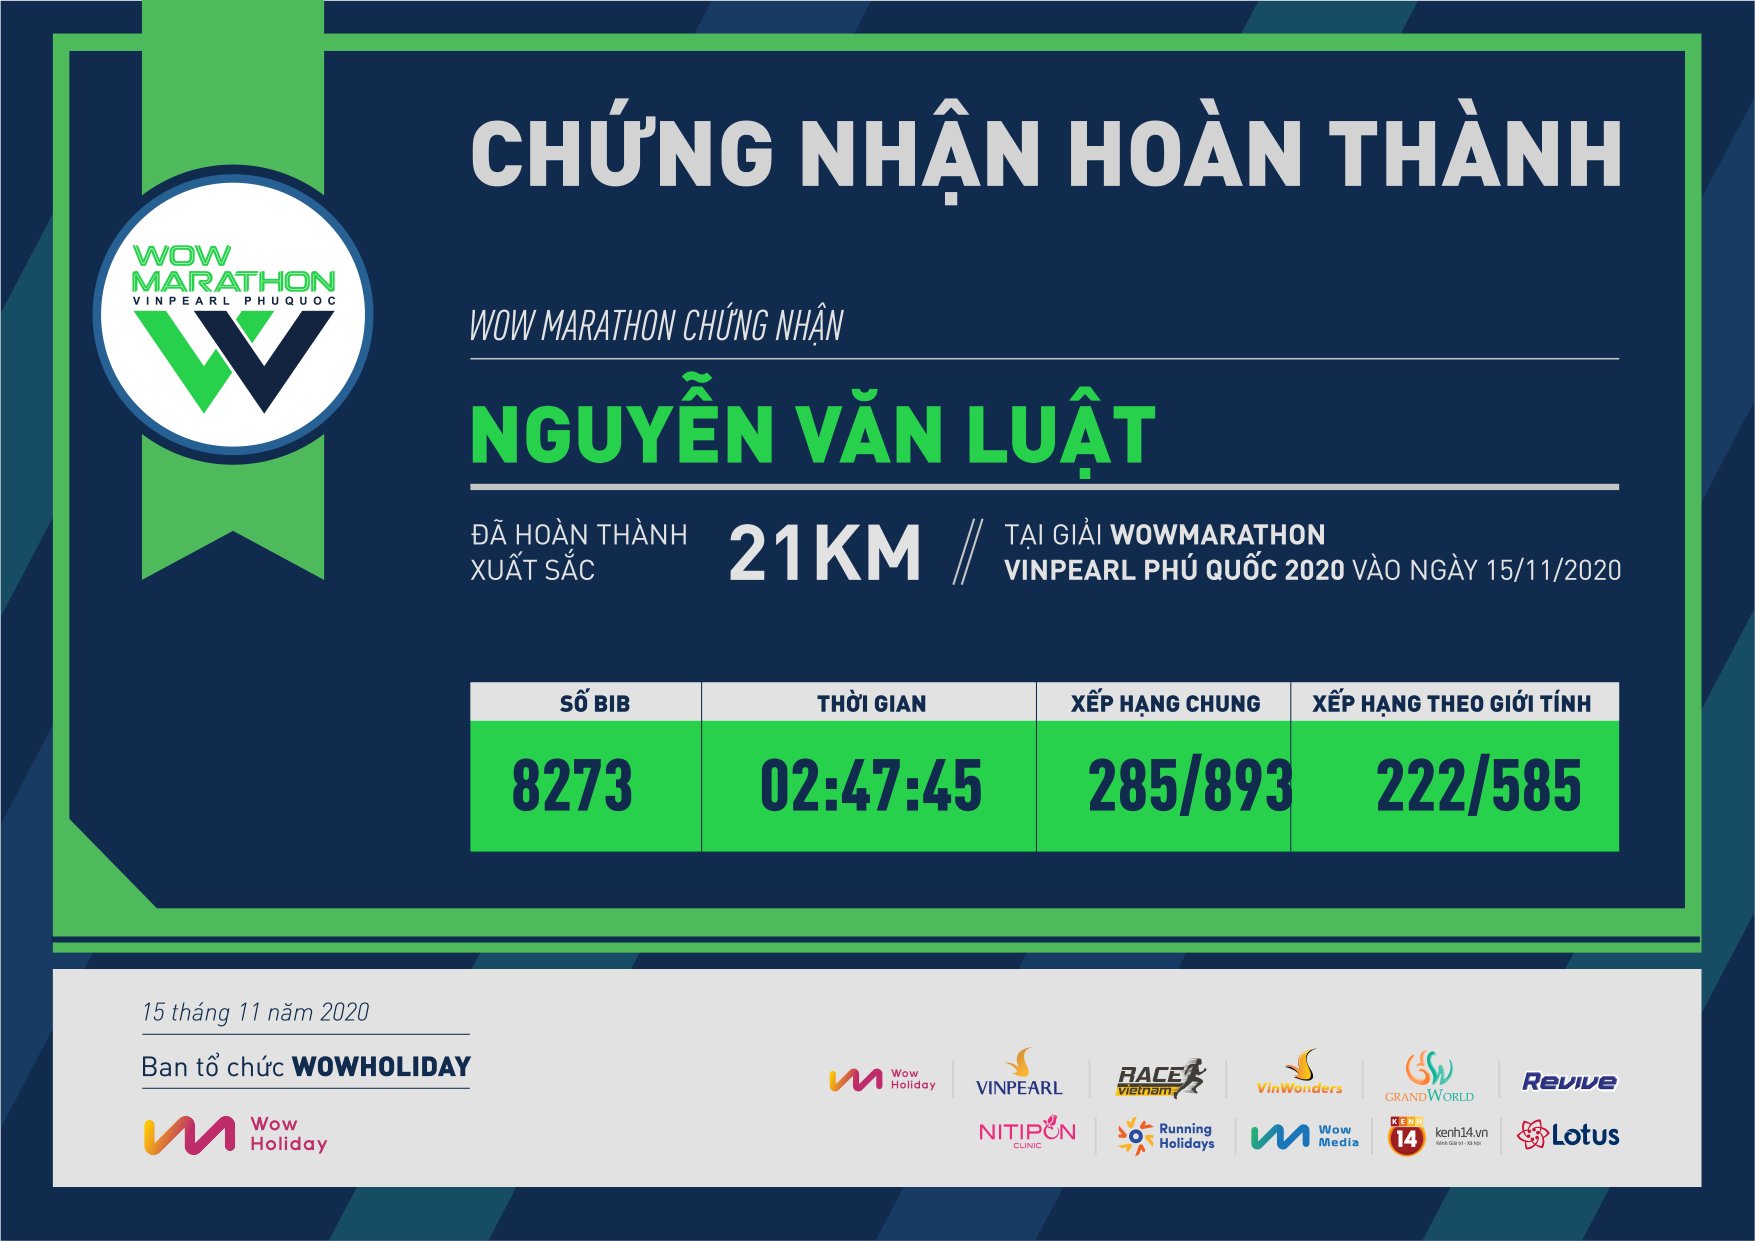 8273 - Nguyễn Văn Luật